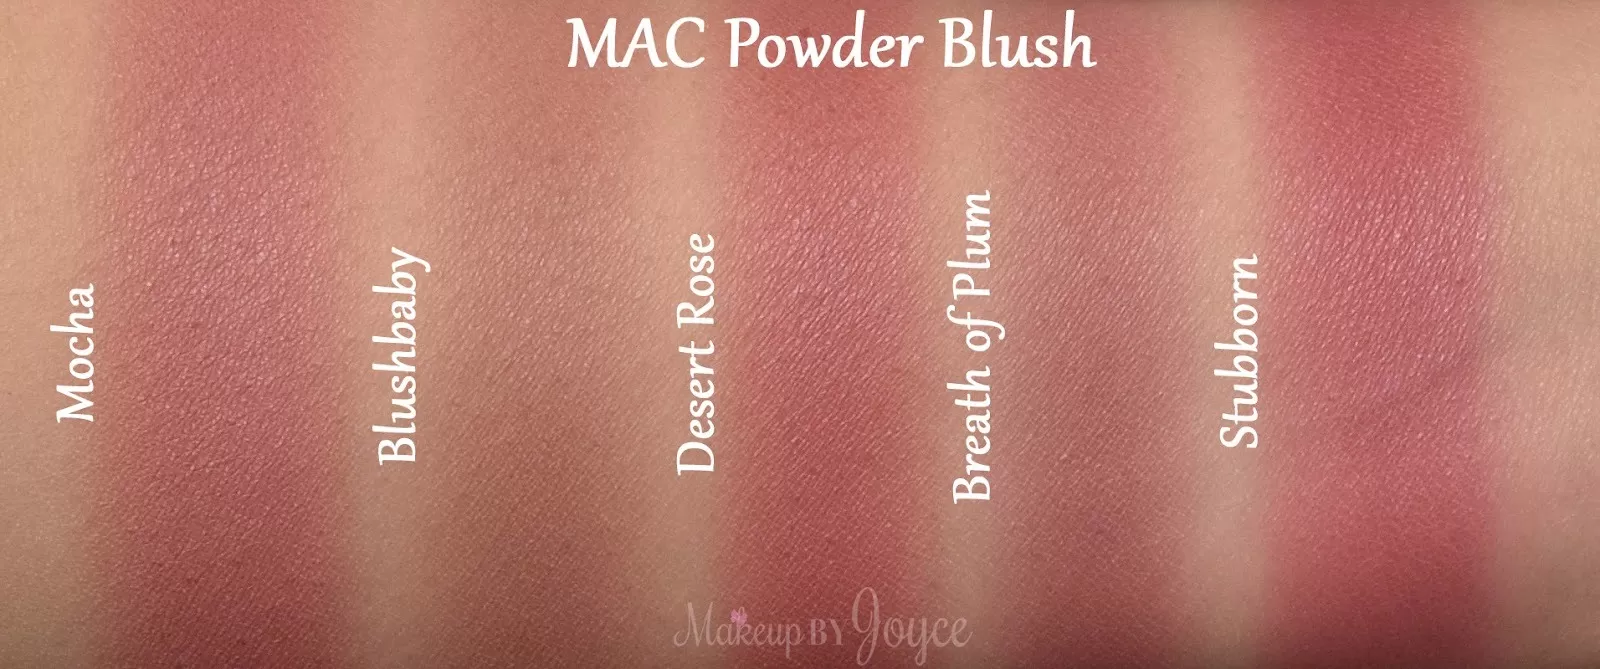 شید رنگ رژگونه مک powder blush اصل + (تخفیف)